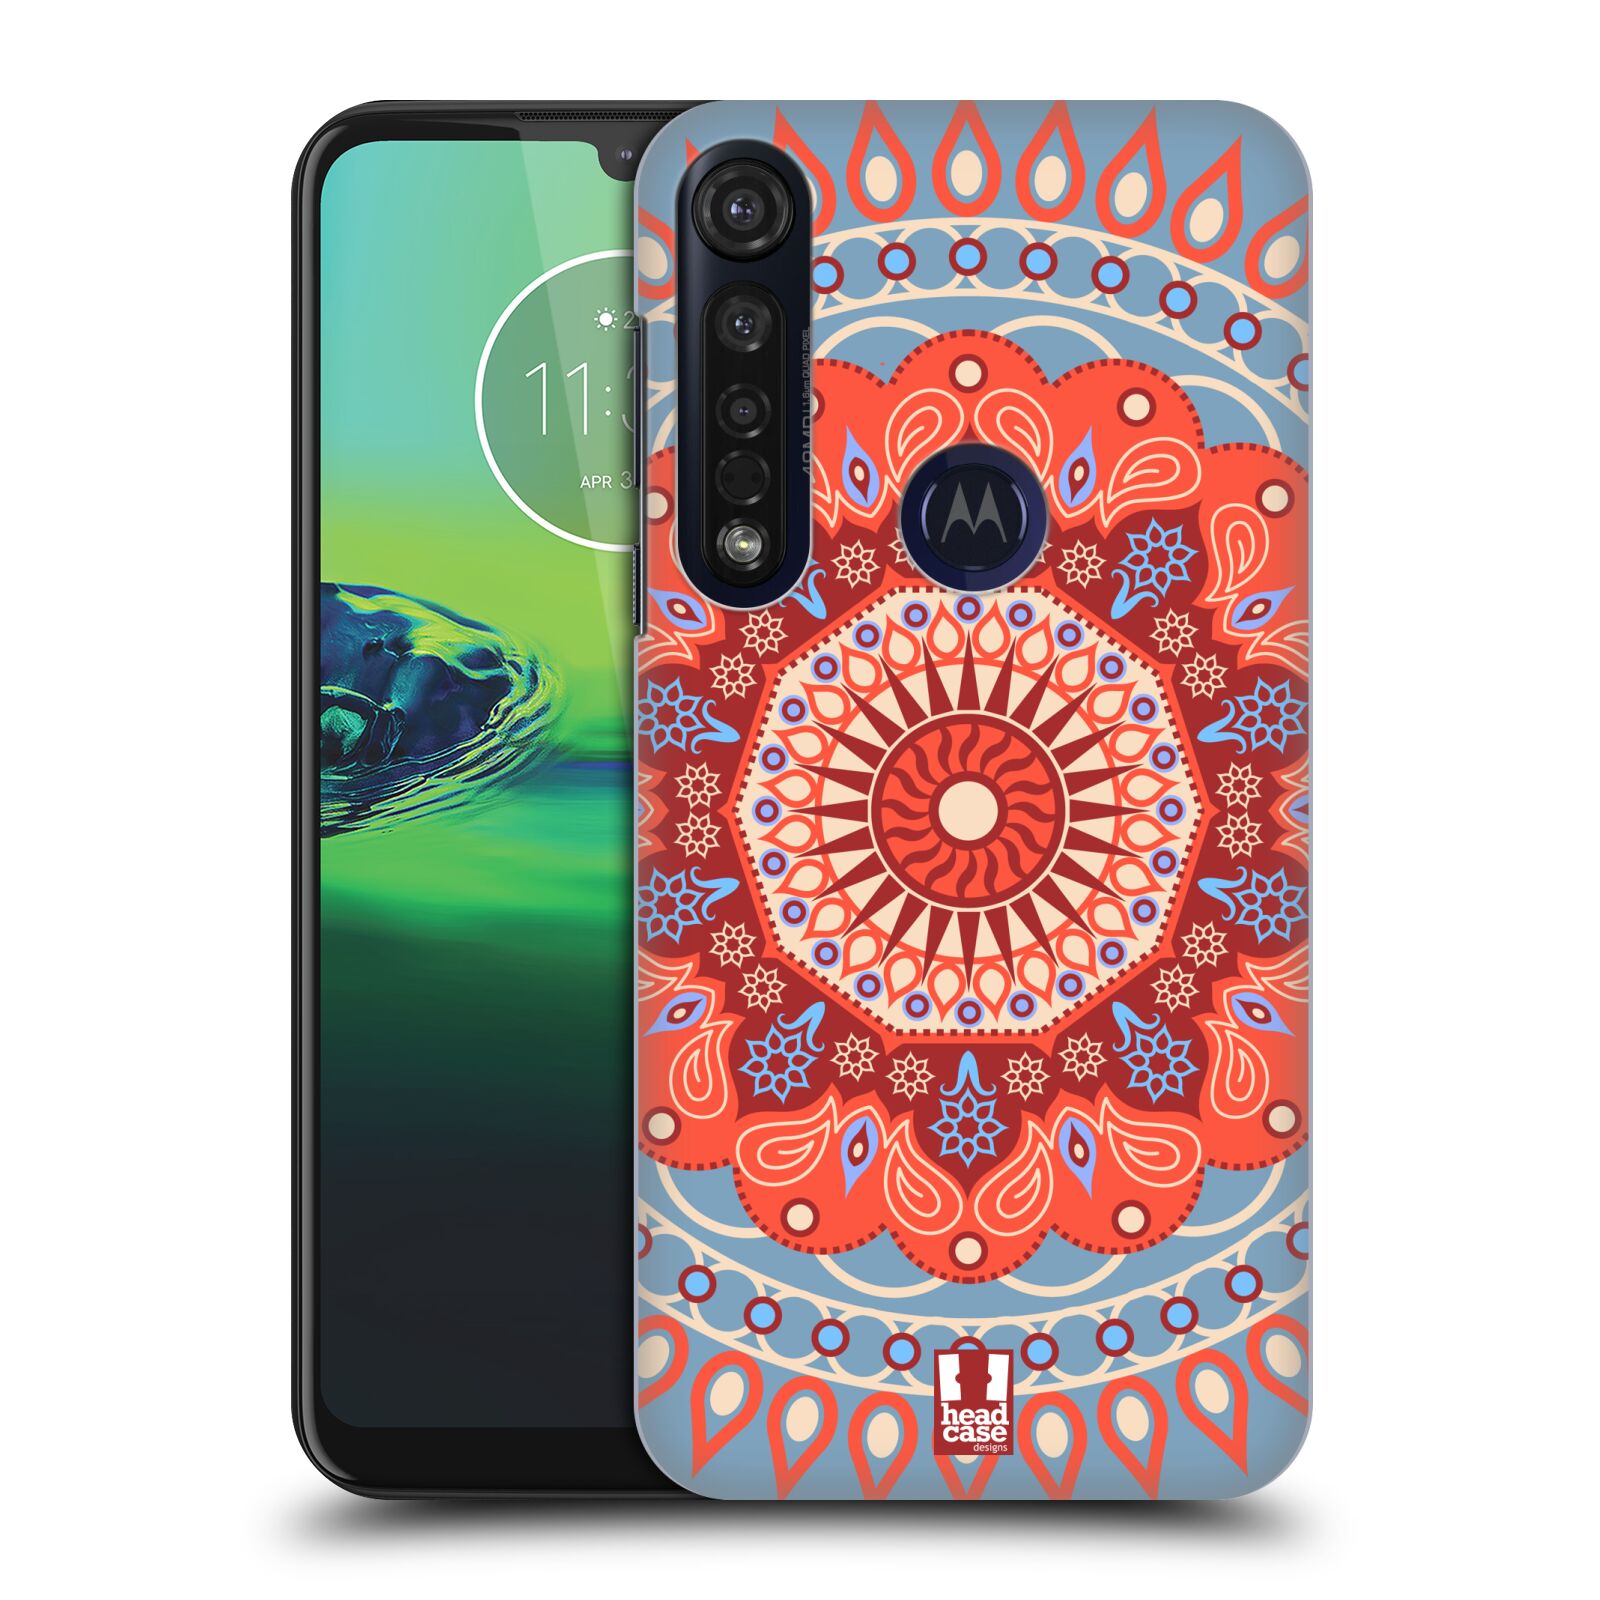 Pouzdro na mobil Motorola Moto G8 PLUS - HEAD CASE - vzor Indie Mandala slunce barevný motiv ČERVENÁ A MODRÁ